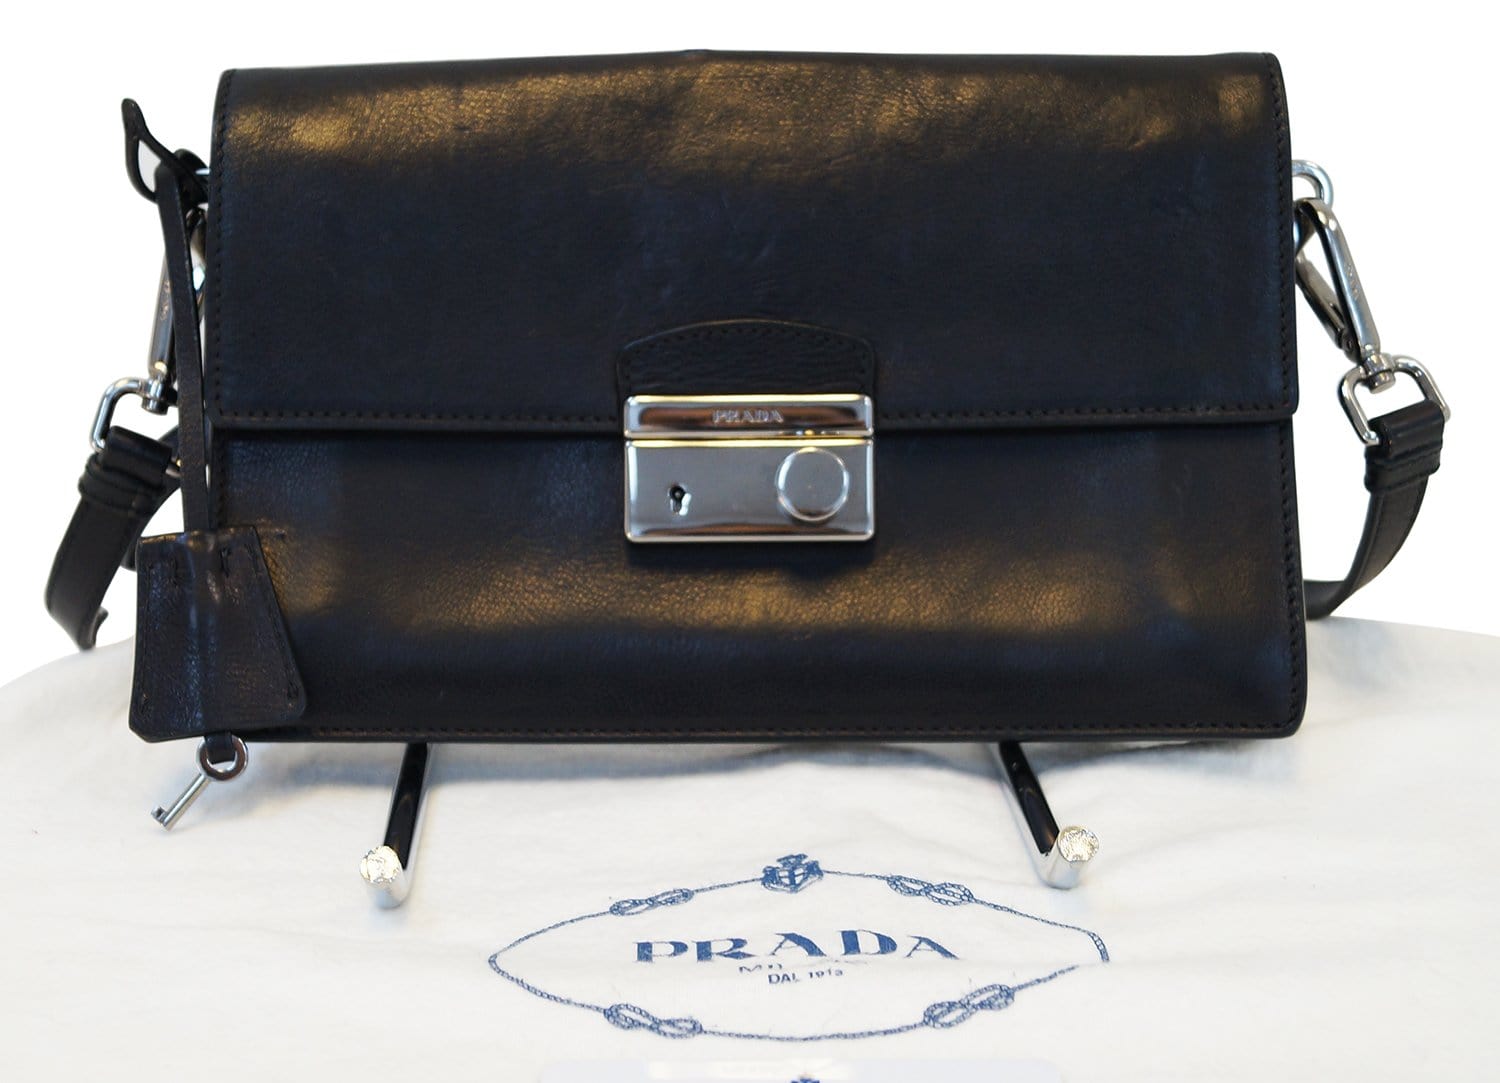 Authentic PRADA Saffiano Leather Black Crossbody Bag E3238